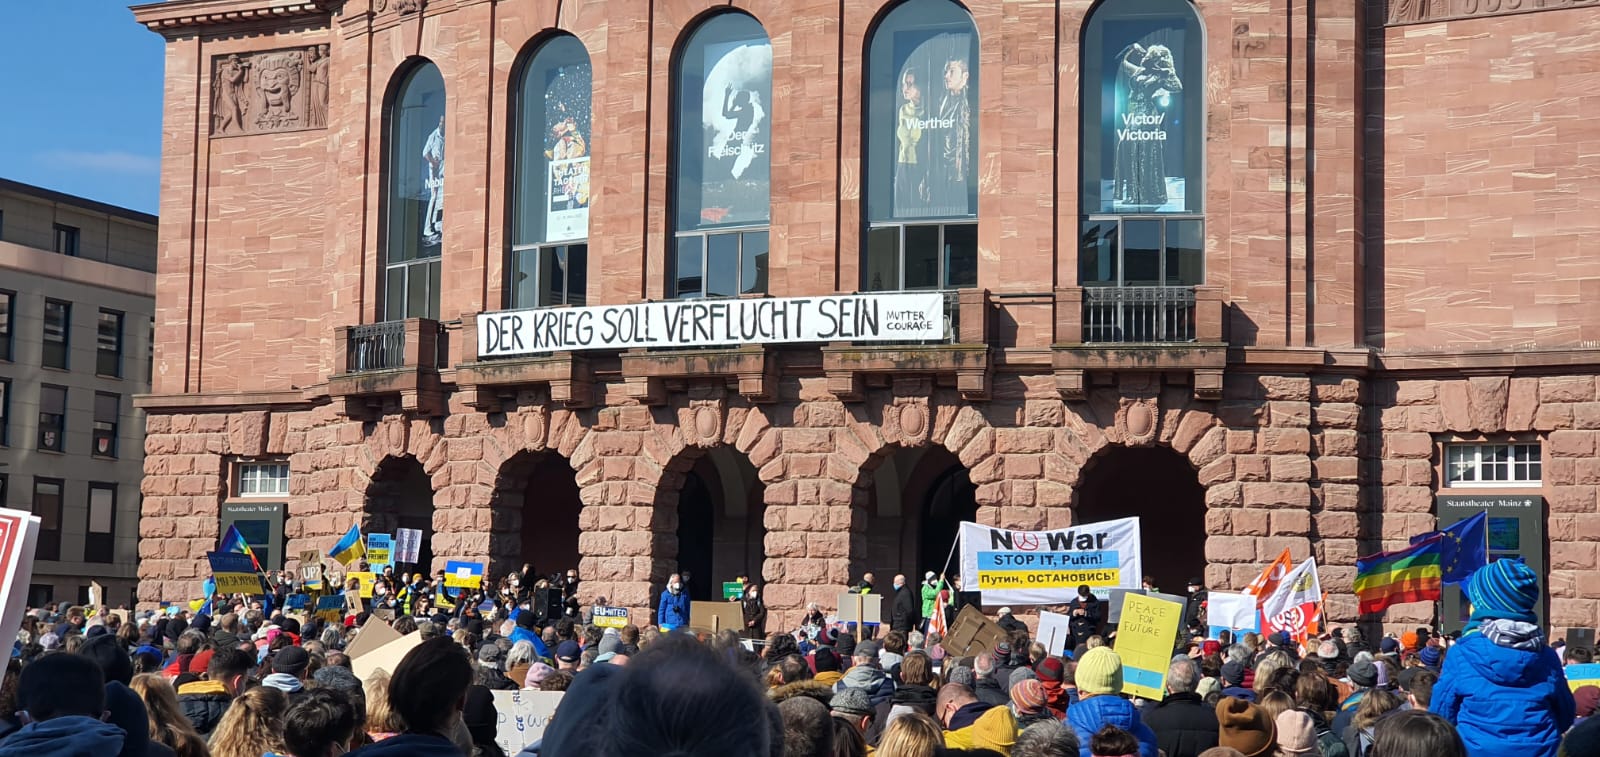 Das Bild ist auf einer Demo gegen den Ukrainekrieg am 06.03.22 in Mainz entstanden. Zu sehen ist eine große Menschengruppe, vorne Banner mit der Aufscrhift "Der Krieg soll verflucht sein" und "no war! Stop it Putin!".